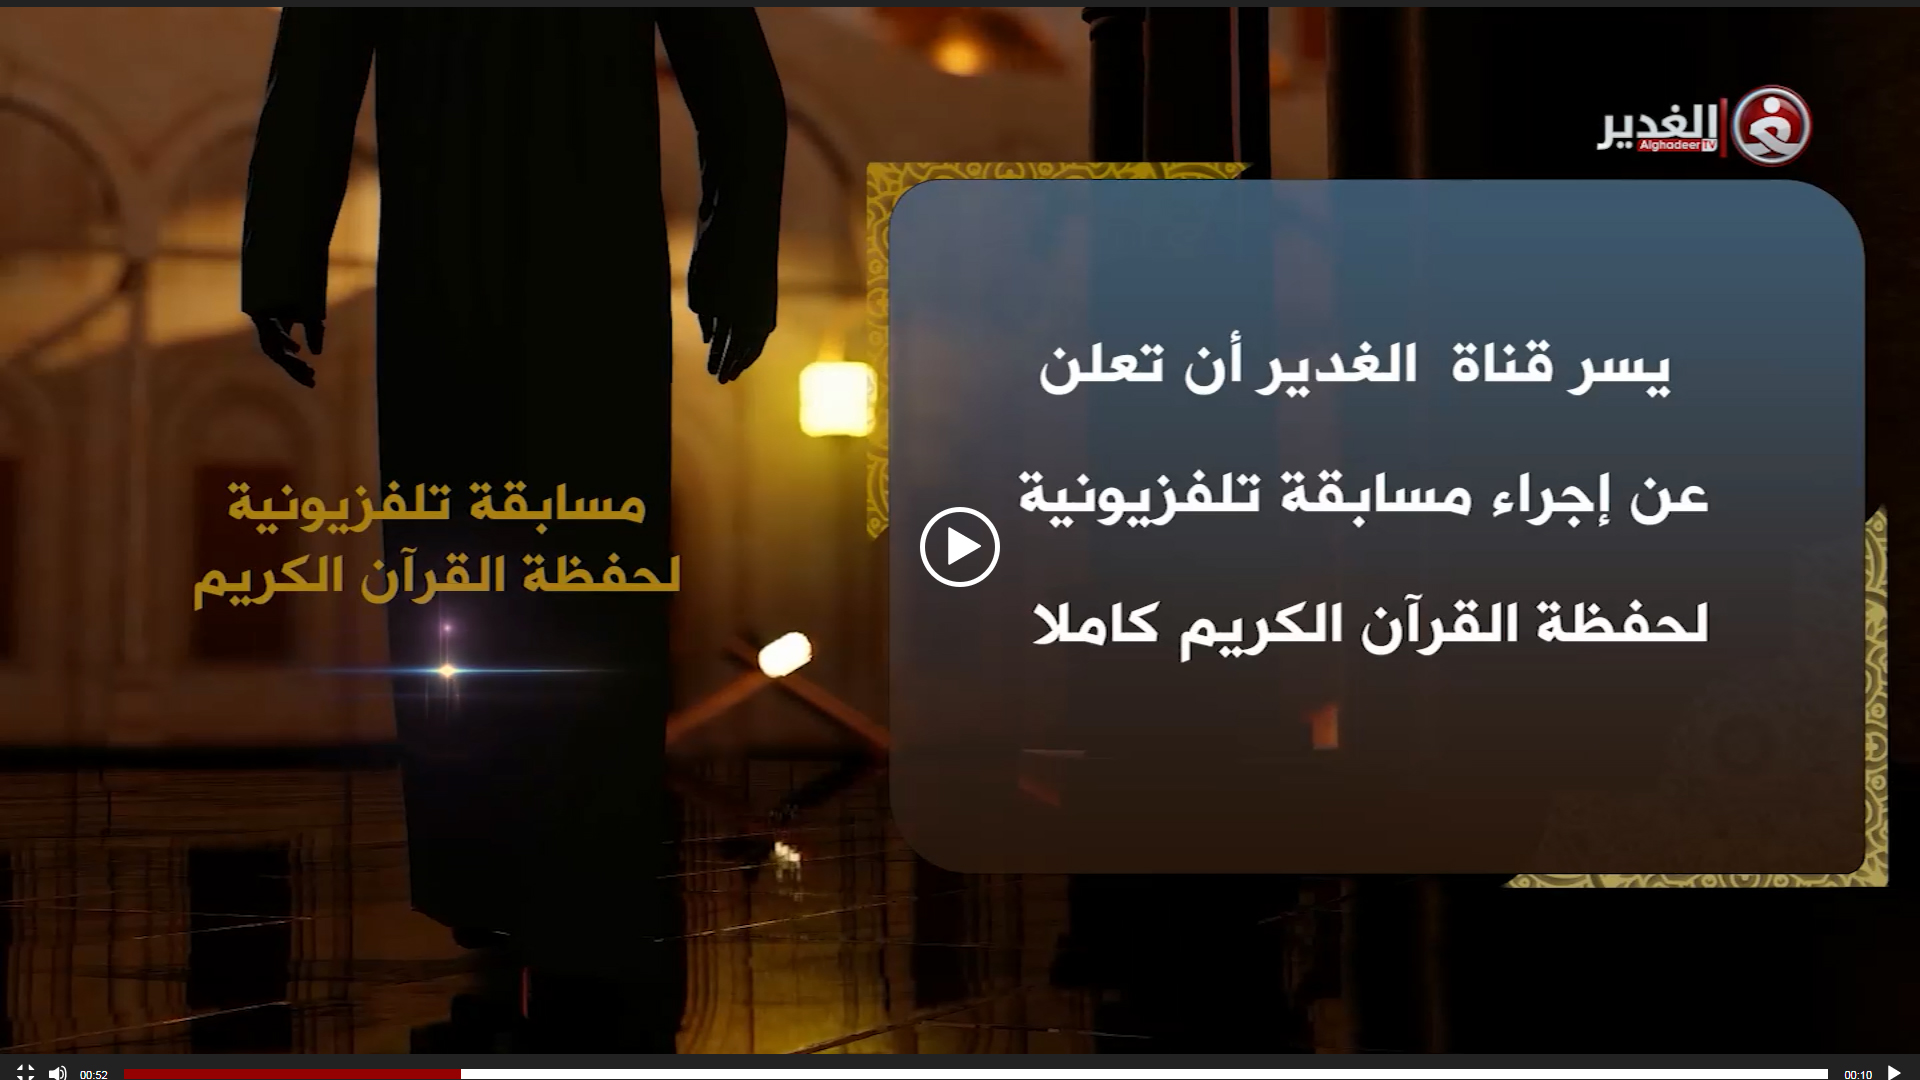 قناة الغدير الفضائية تقيم مسابقة تلفزيونية لحفظة القرآن الكريم كاملاً